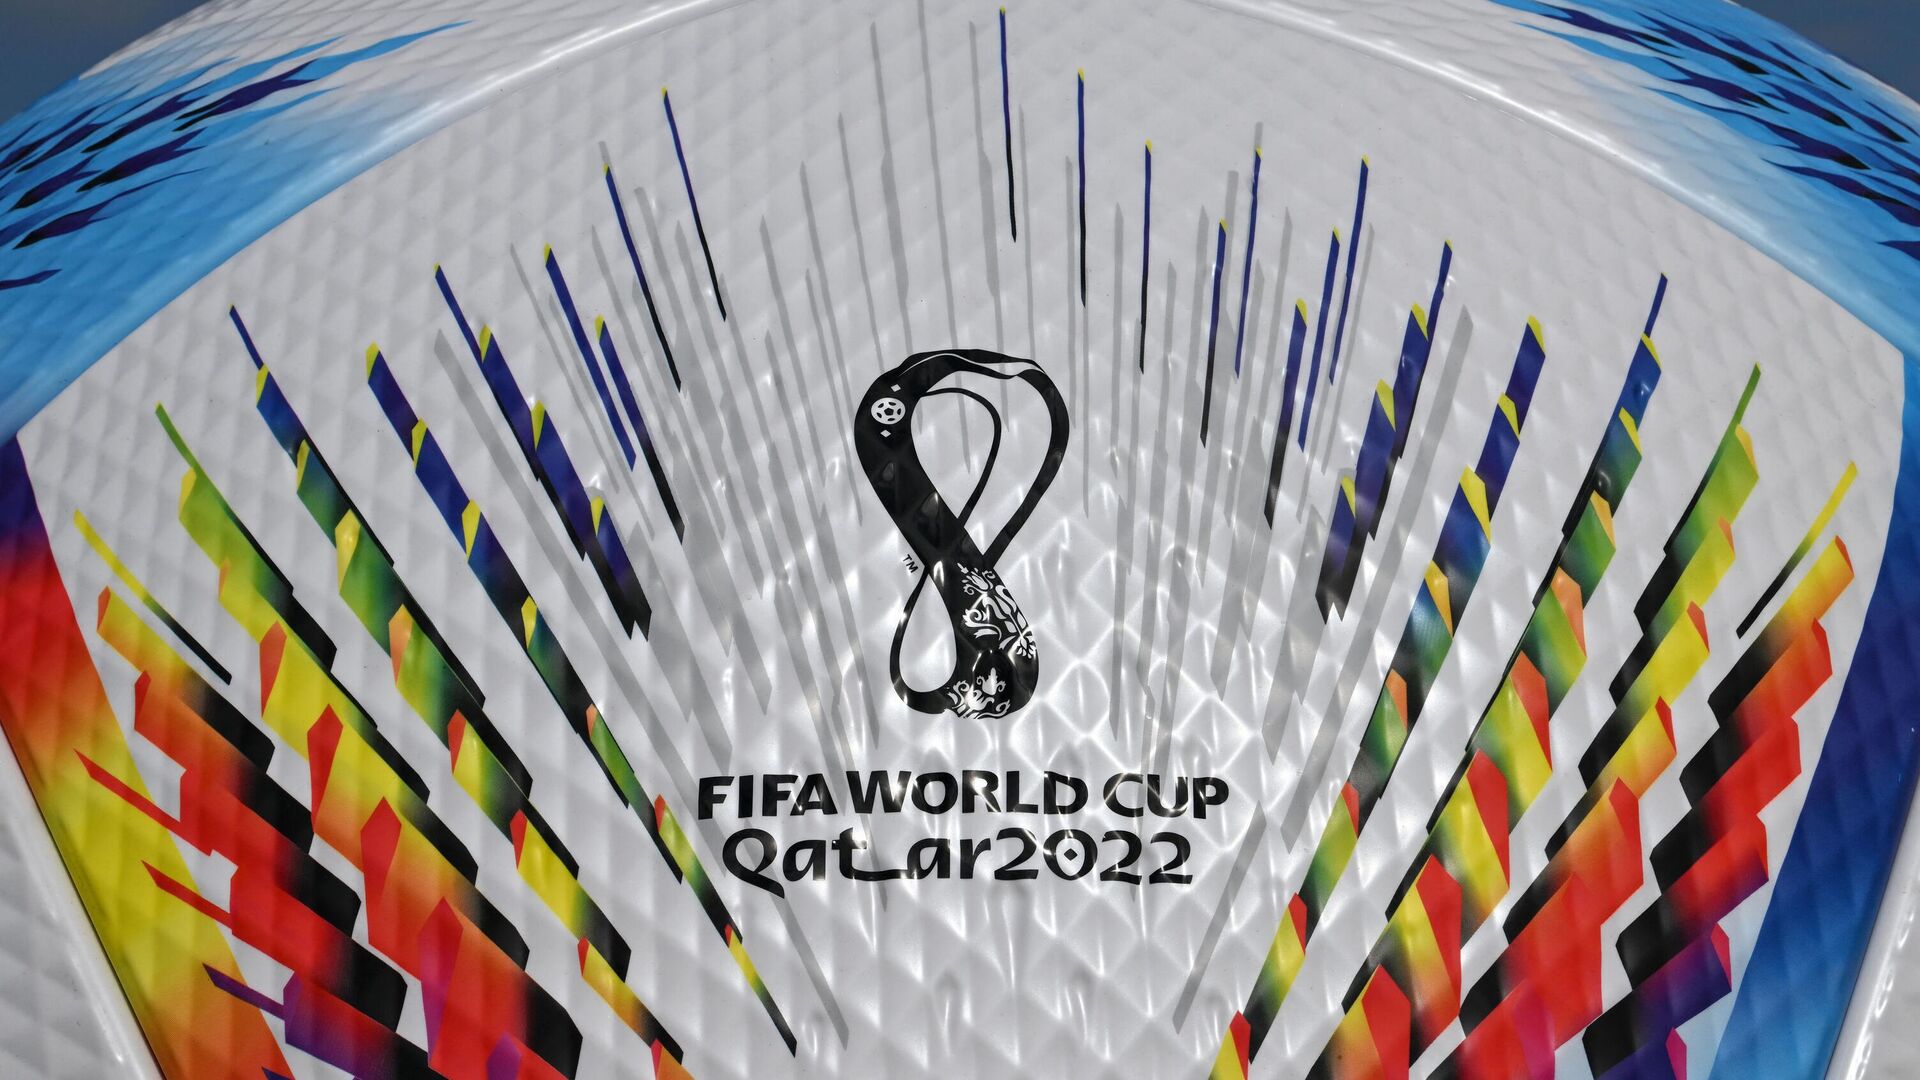 Футбольный мяч с логотипом ЧМ-2022 в Катаре - Sputnik Беларусь, 1920, 27.09.2022